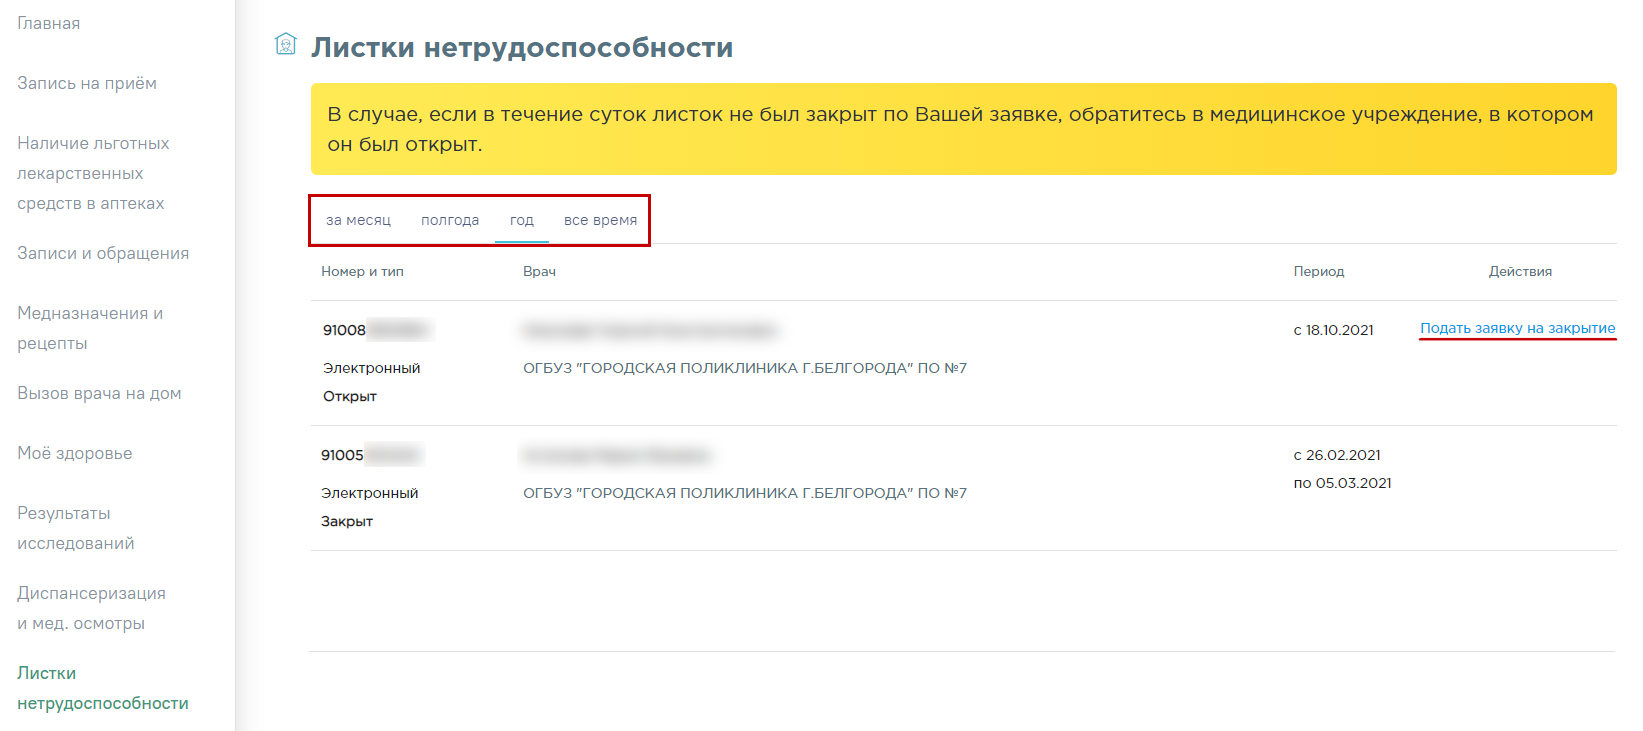 Посмотреть листки нетрудоспособности на new.2dr.ru